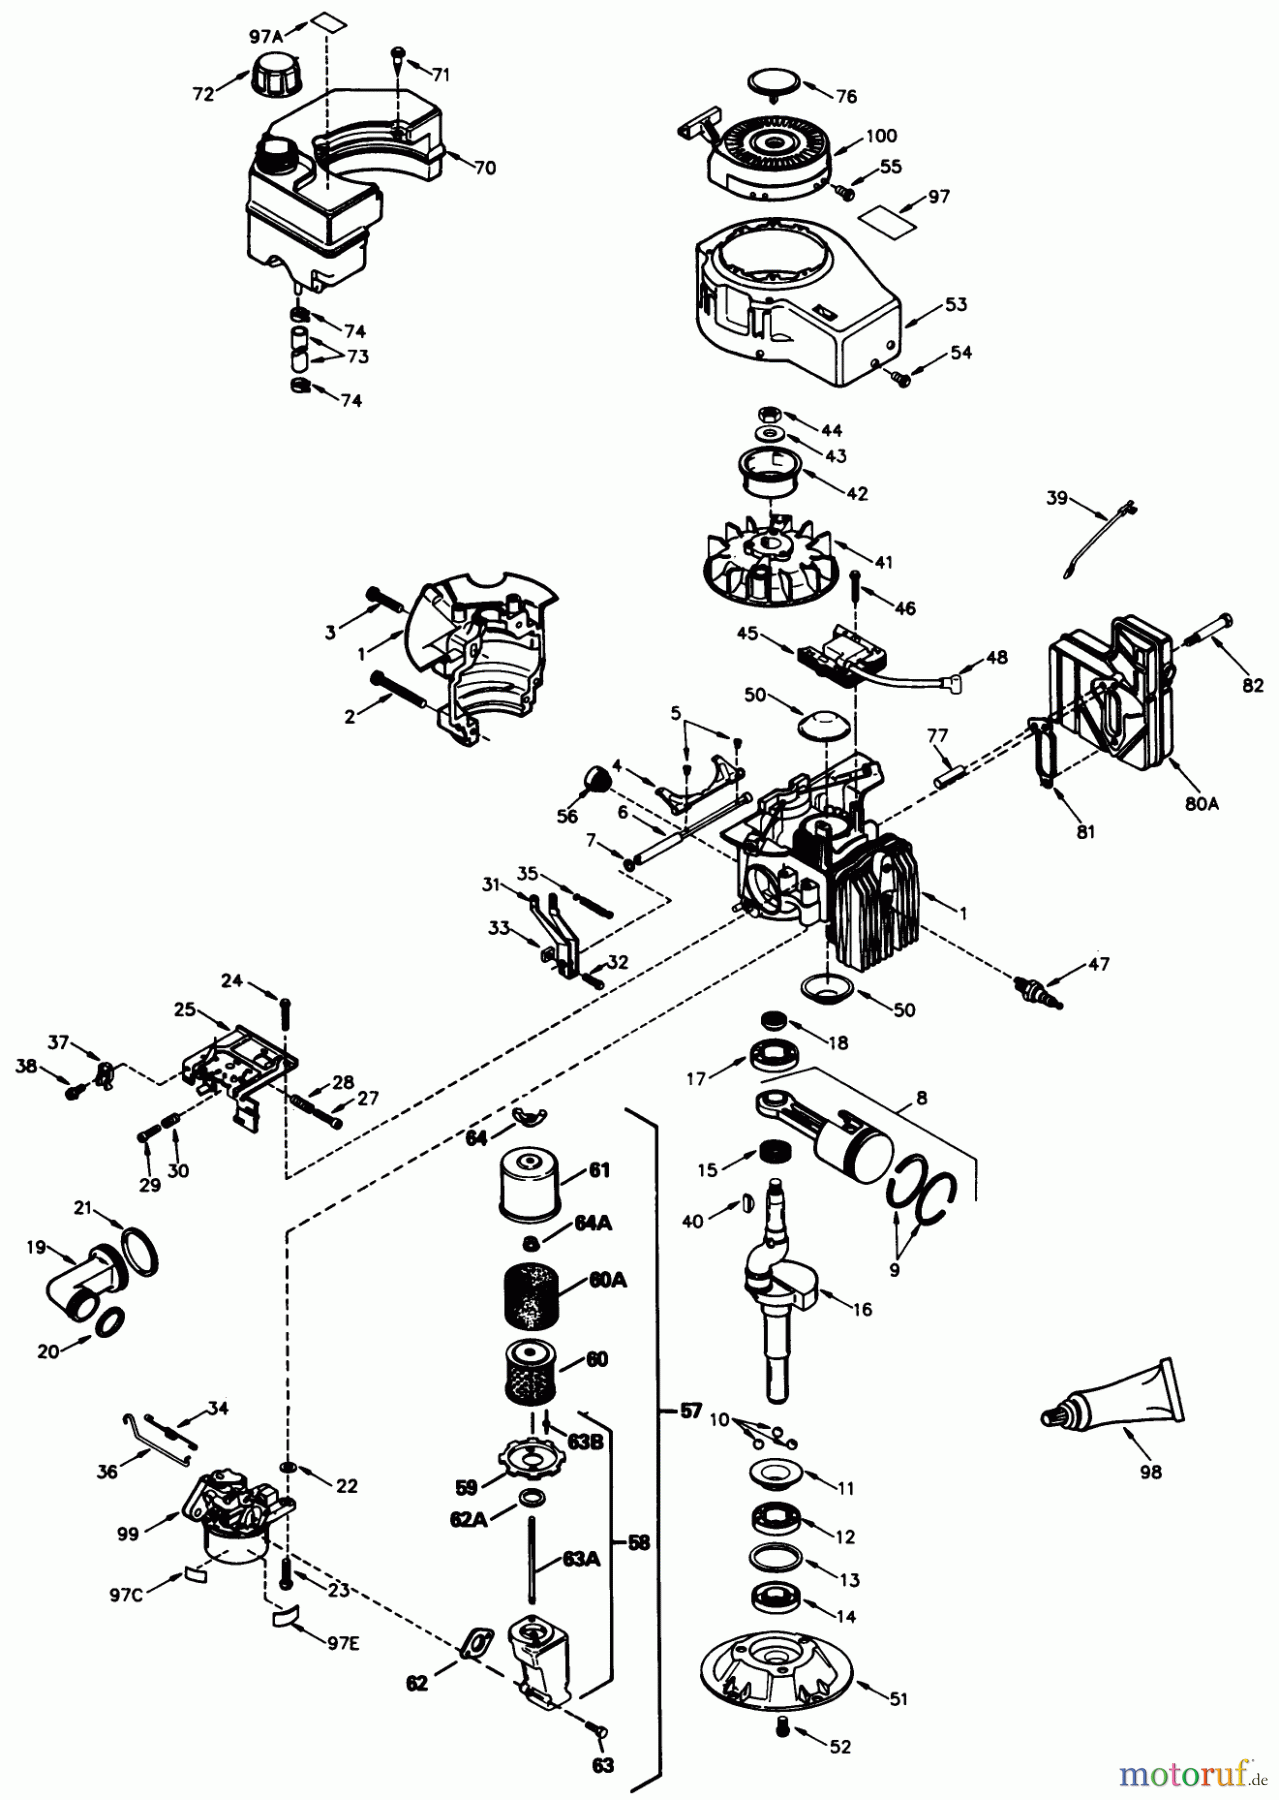  Toro Neu Mowers, Walk-Behind Seite 2 26551 - Toro Lawnmower, 1989 (9000001-9999999) ENGINE MODEL NO. TVS840-8014B